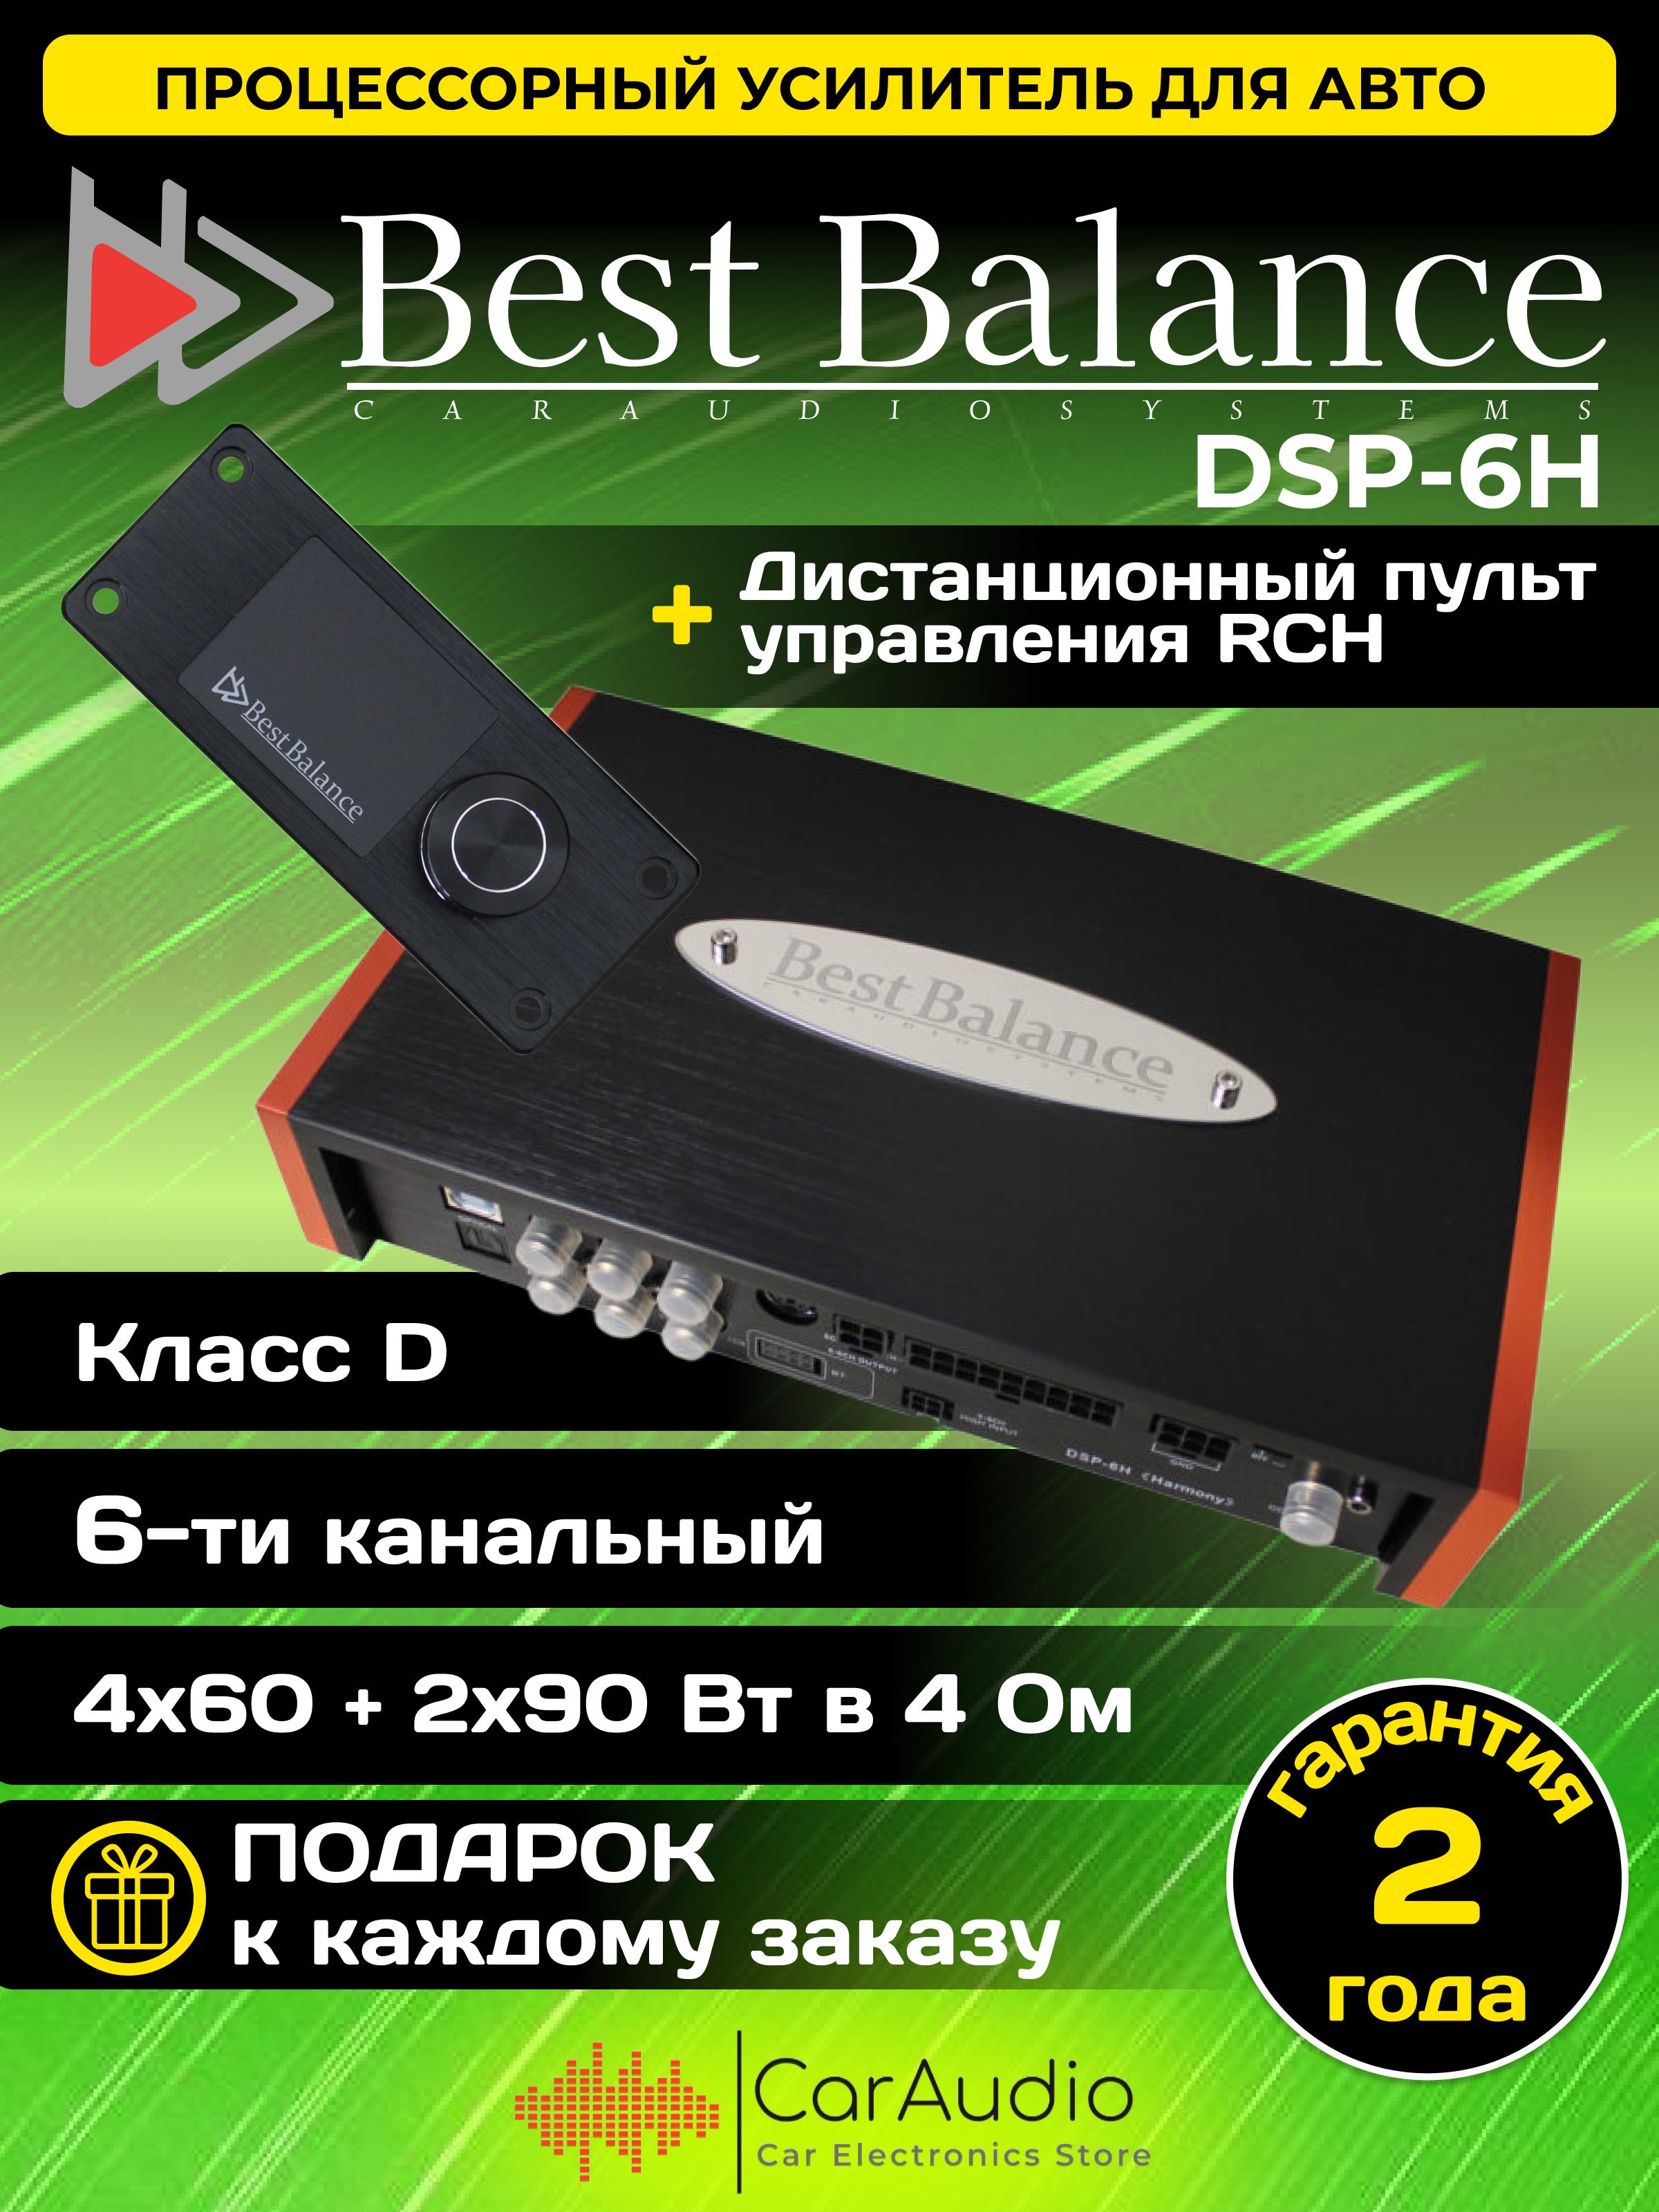 Процессорный усилитель Best Balance DSP-6H "Harmony"+ дистанционный пульт управления RCH